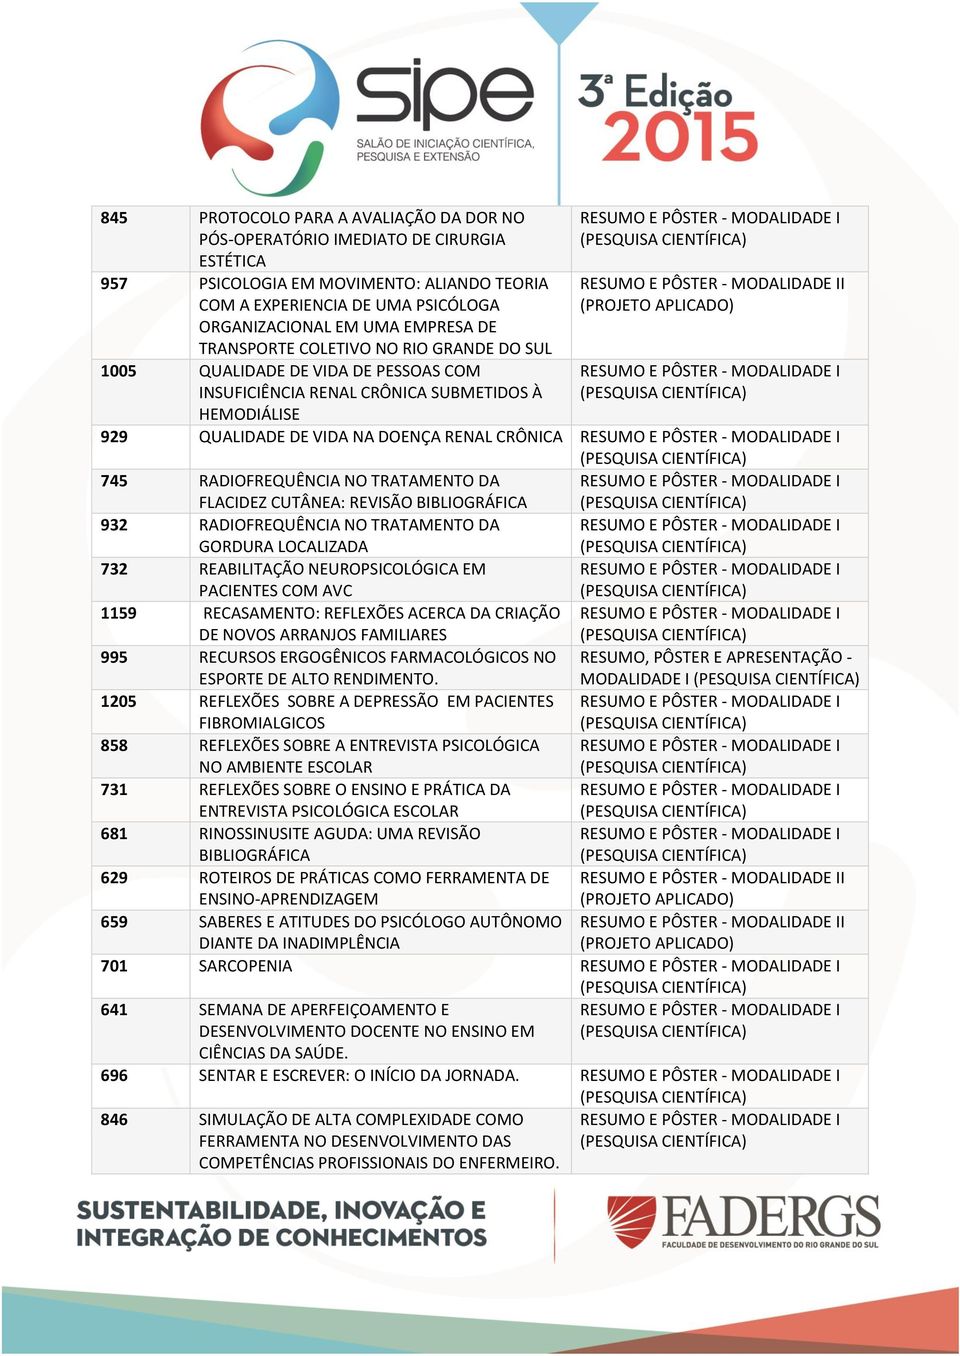 NO TRATAMENTO DA FLACIDEZ CUTÂNEA: REVISÃO BIBLIOGRÁFICA 932 RADIOFREQUÊNCIA NO TRATAMENTO DA GORDURA LOCALIZADA 732 REABILITAÇÃO NEUROPSICOLÓGICA EM PACIENTES COM AVC 1159 RECASAMENTO: REFLEXÕES